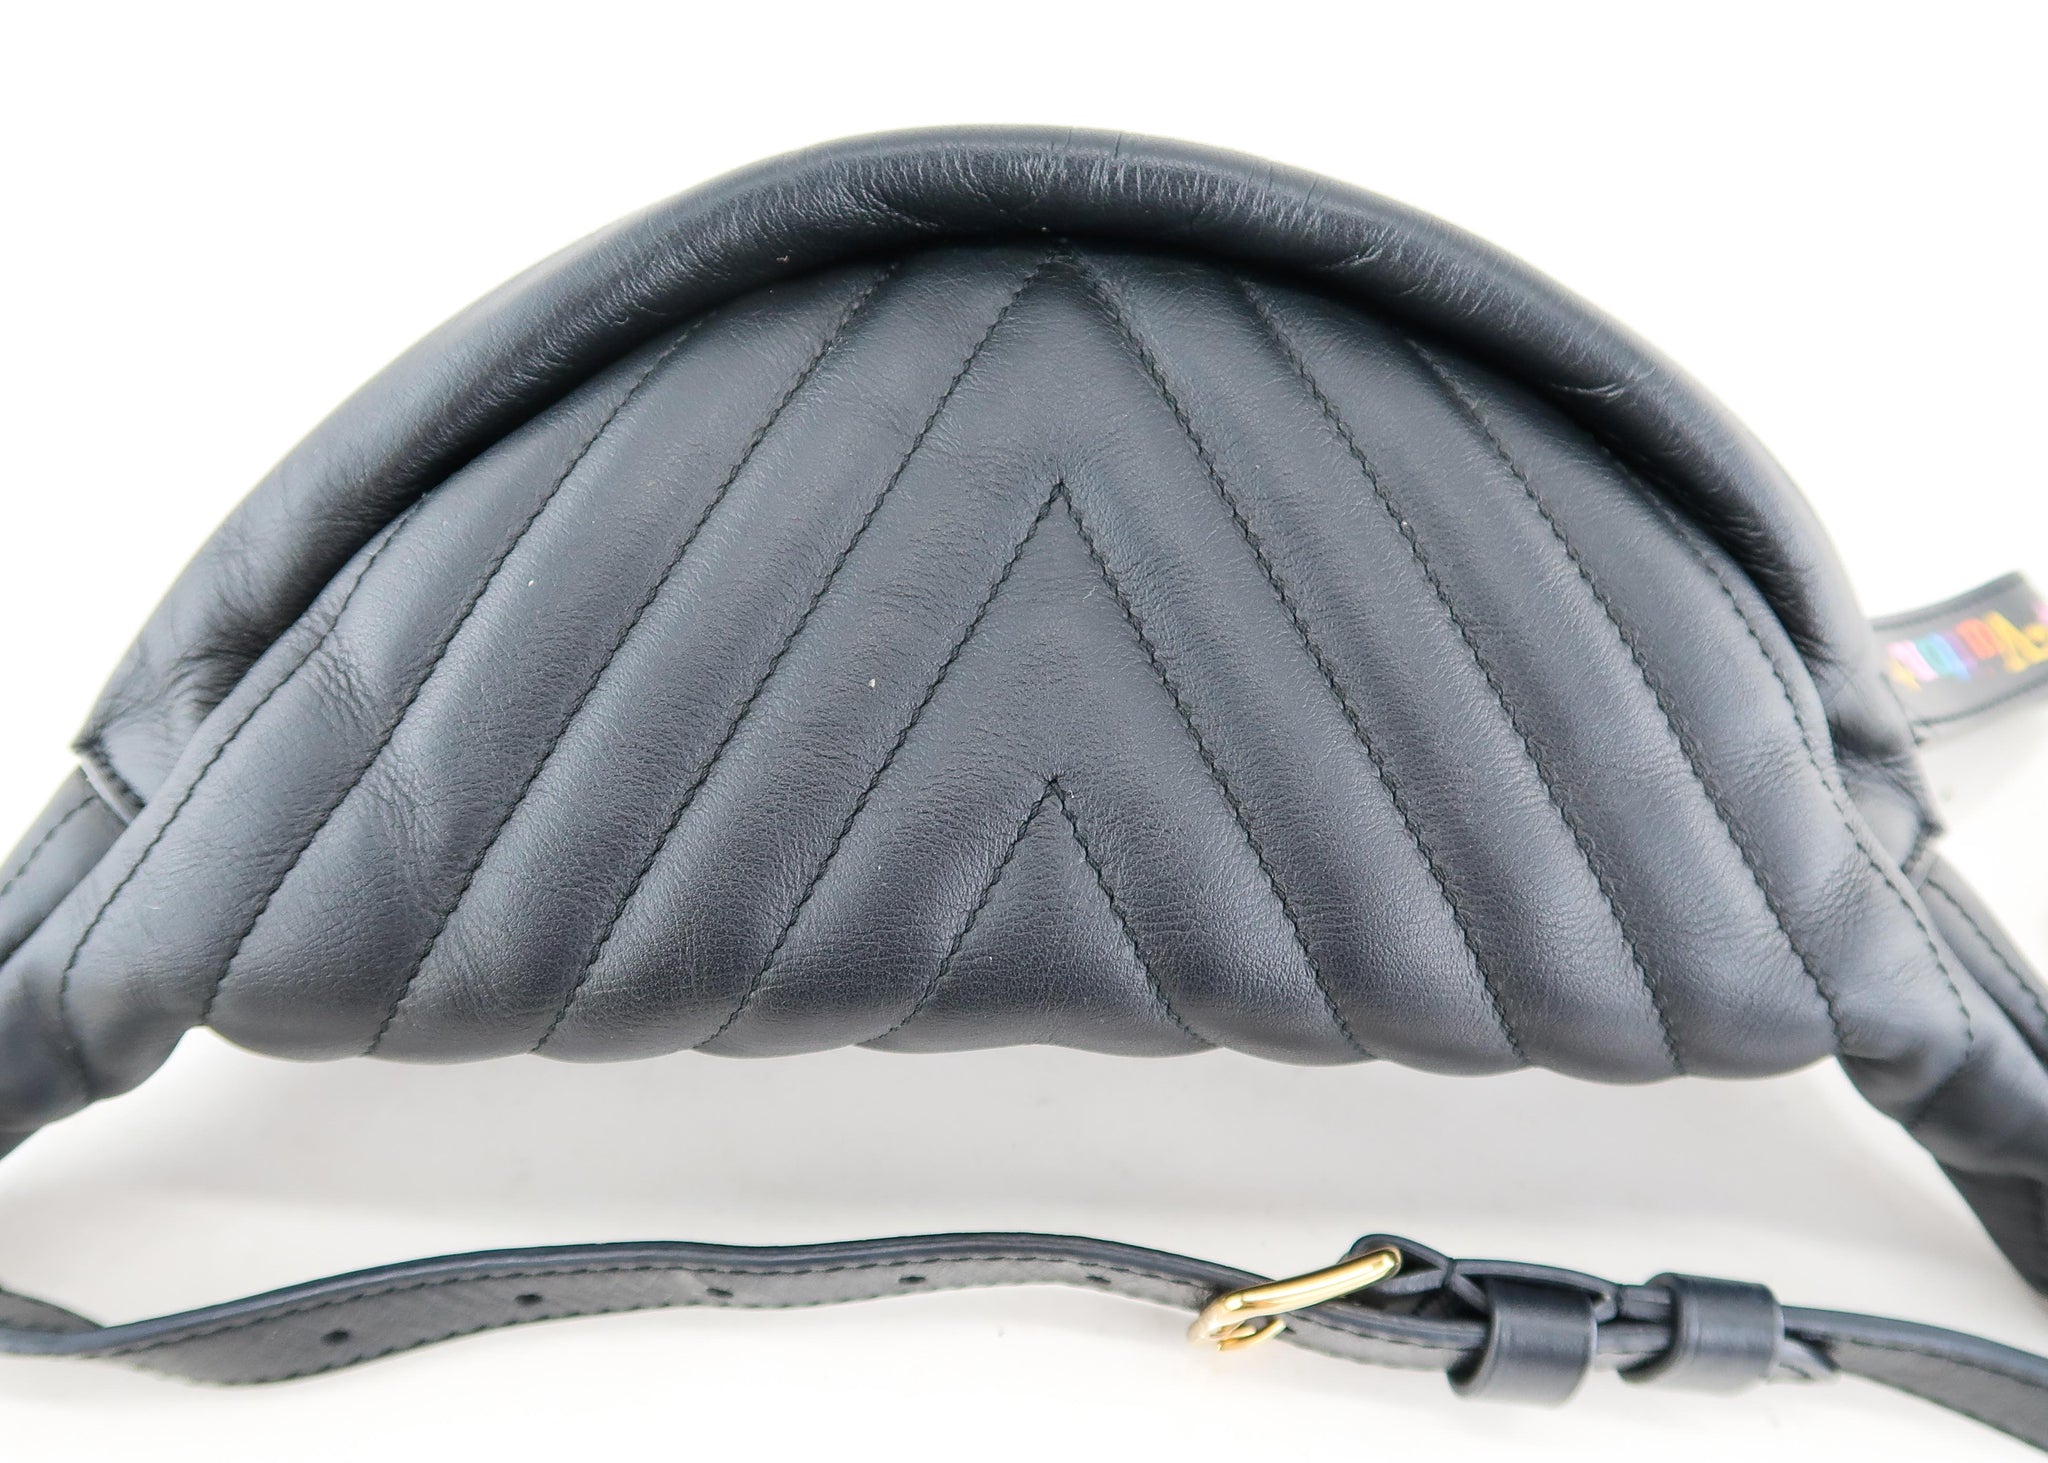 Louis Vuitton New Wave Bumbag - ShopStyle Shoulder Bags